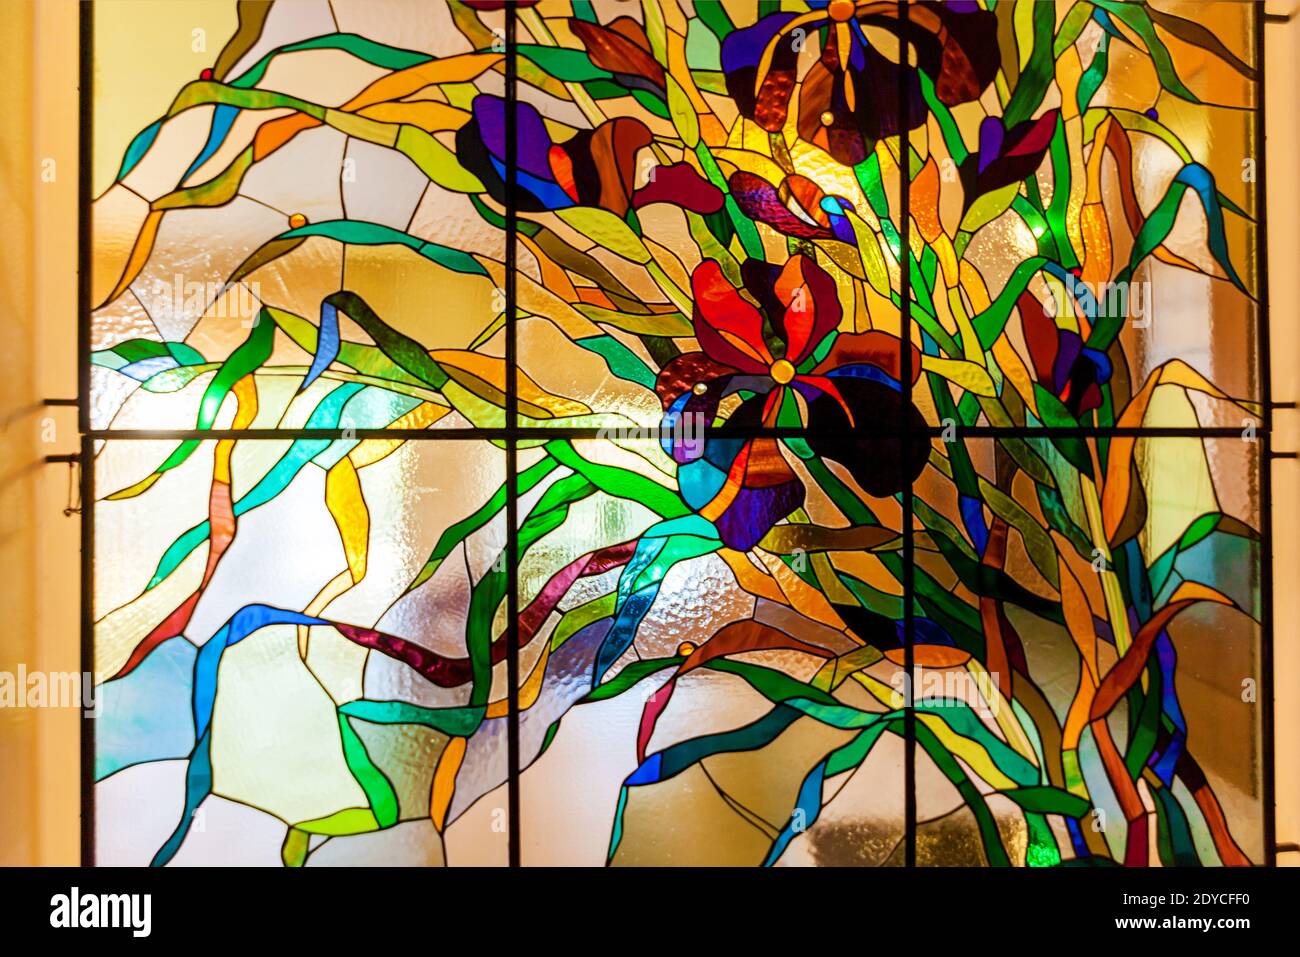 Image d'une fleur multicolore de vitraux colorés dans une fenêtre. Vitraux aux fleurs multicolores Banque D'Images